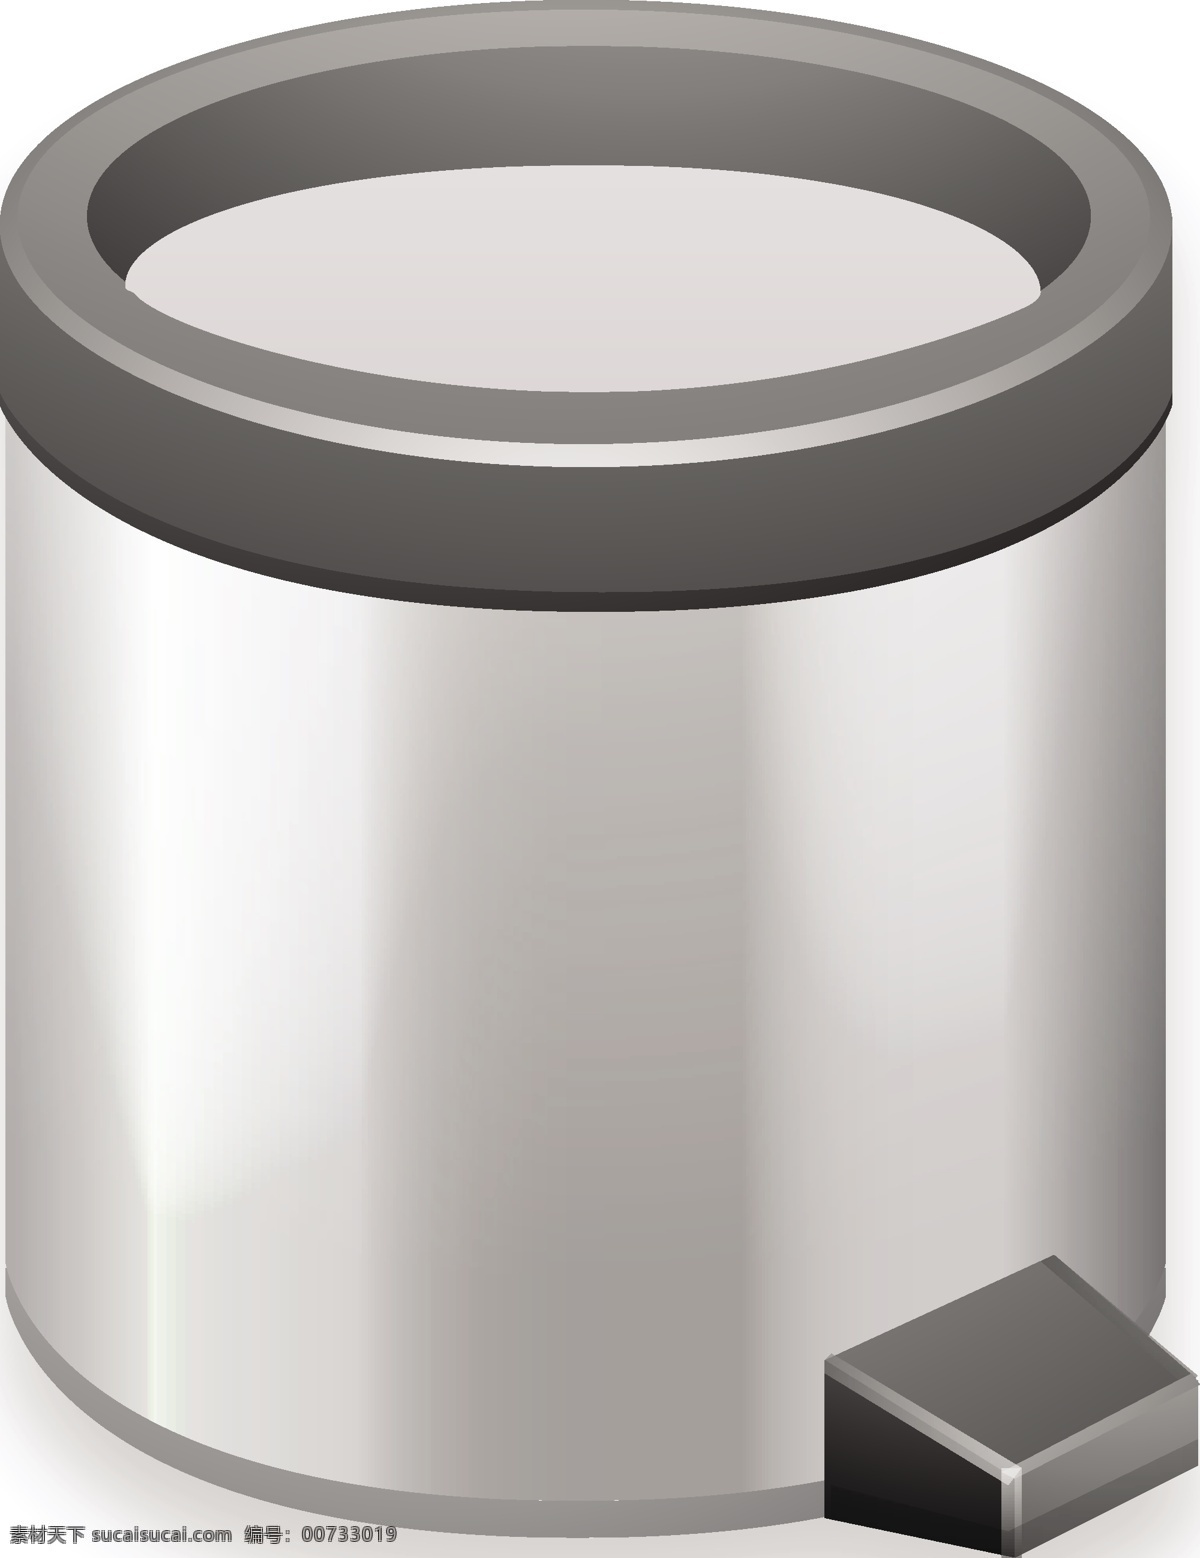 金属 垃圾桶 金属垃圾桶 金属质感 图标 白色